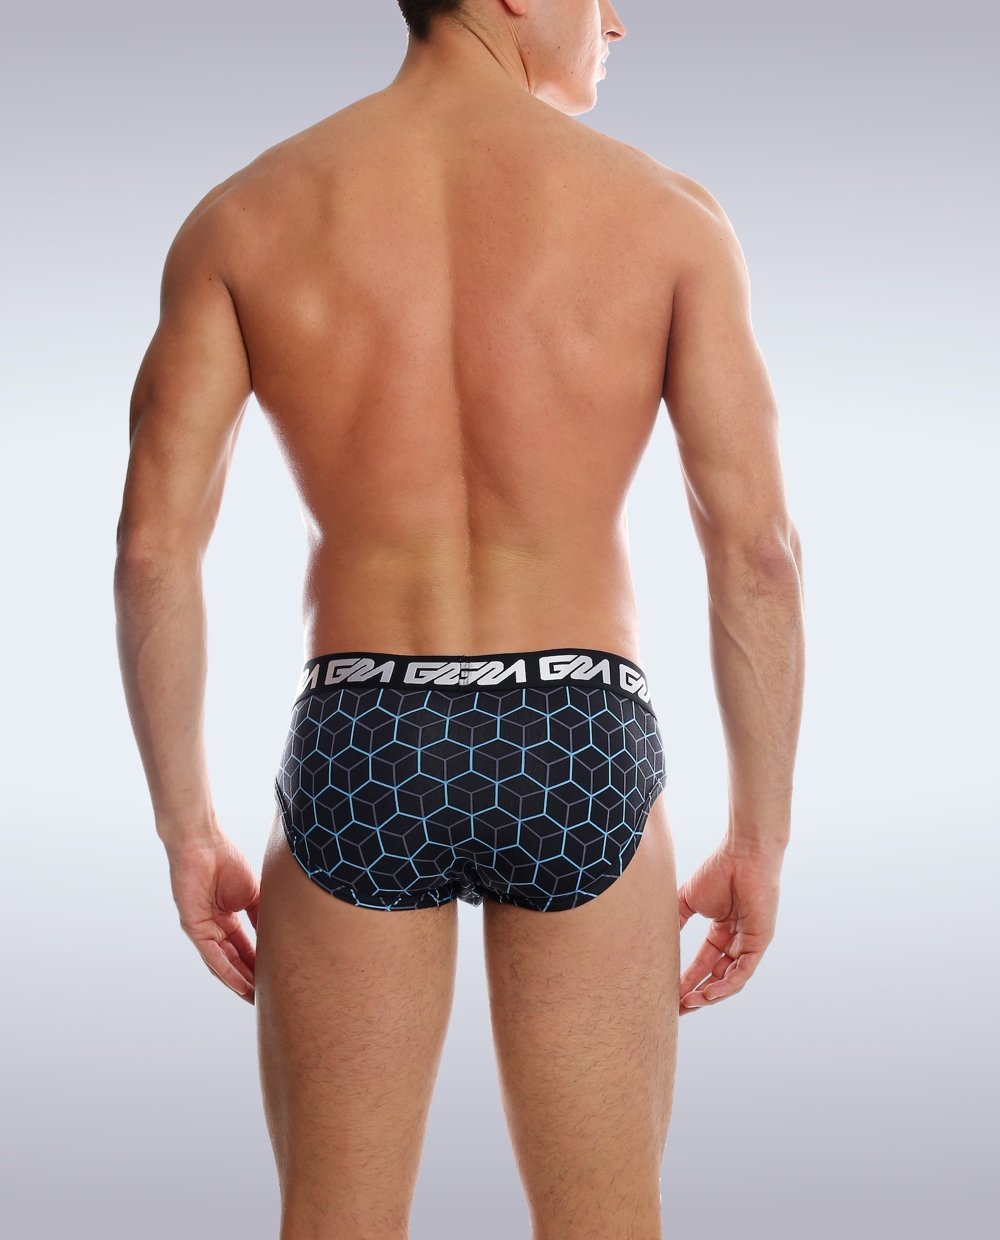 Radiant Brief - Garçon Underwear sexy men’s underwear Briefs Garçon Underwear